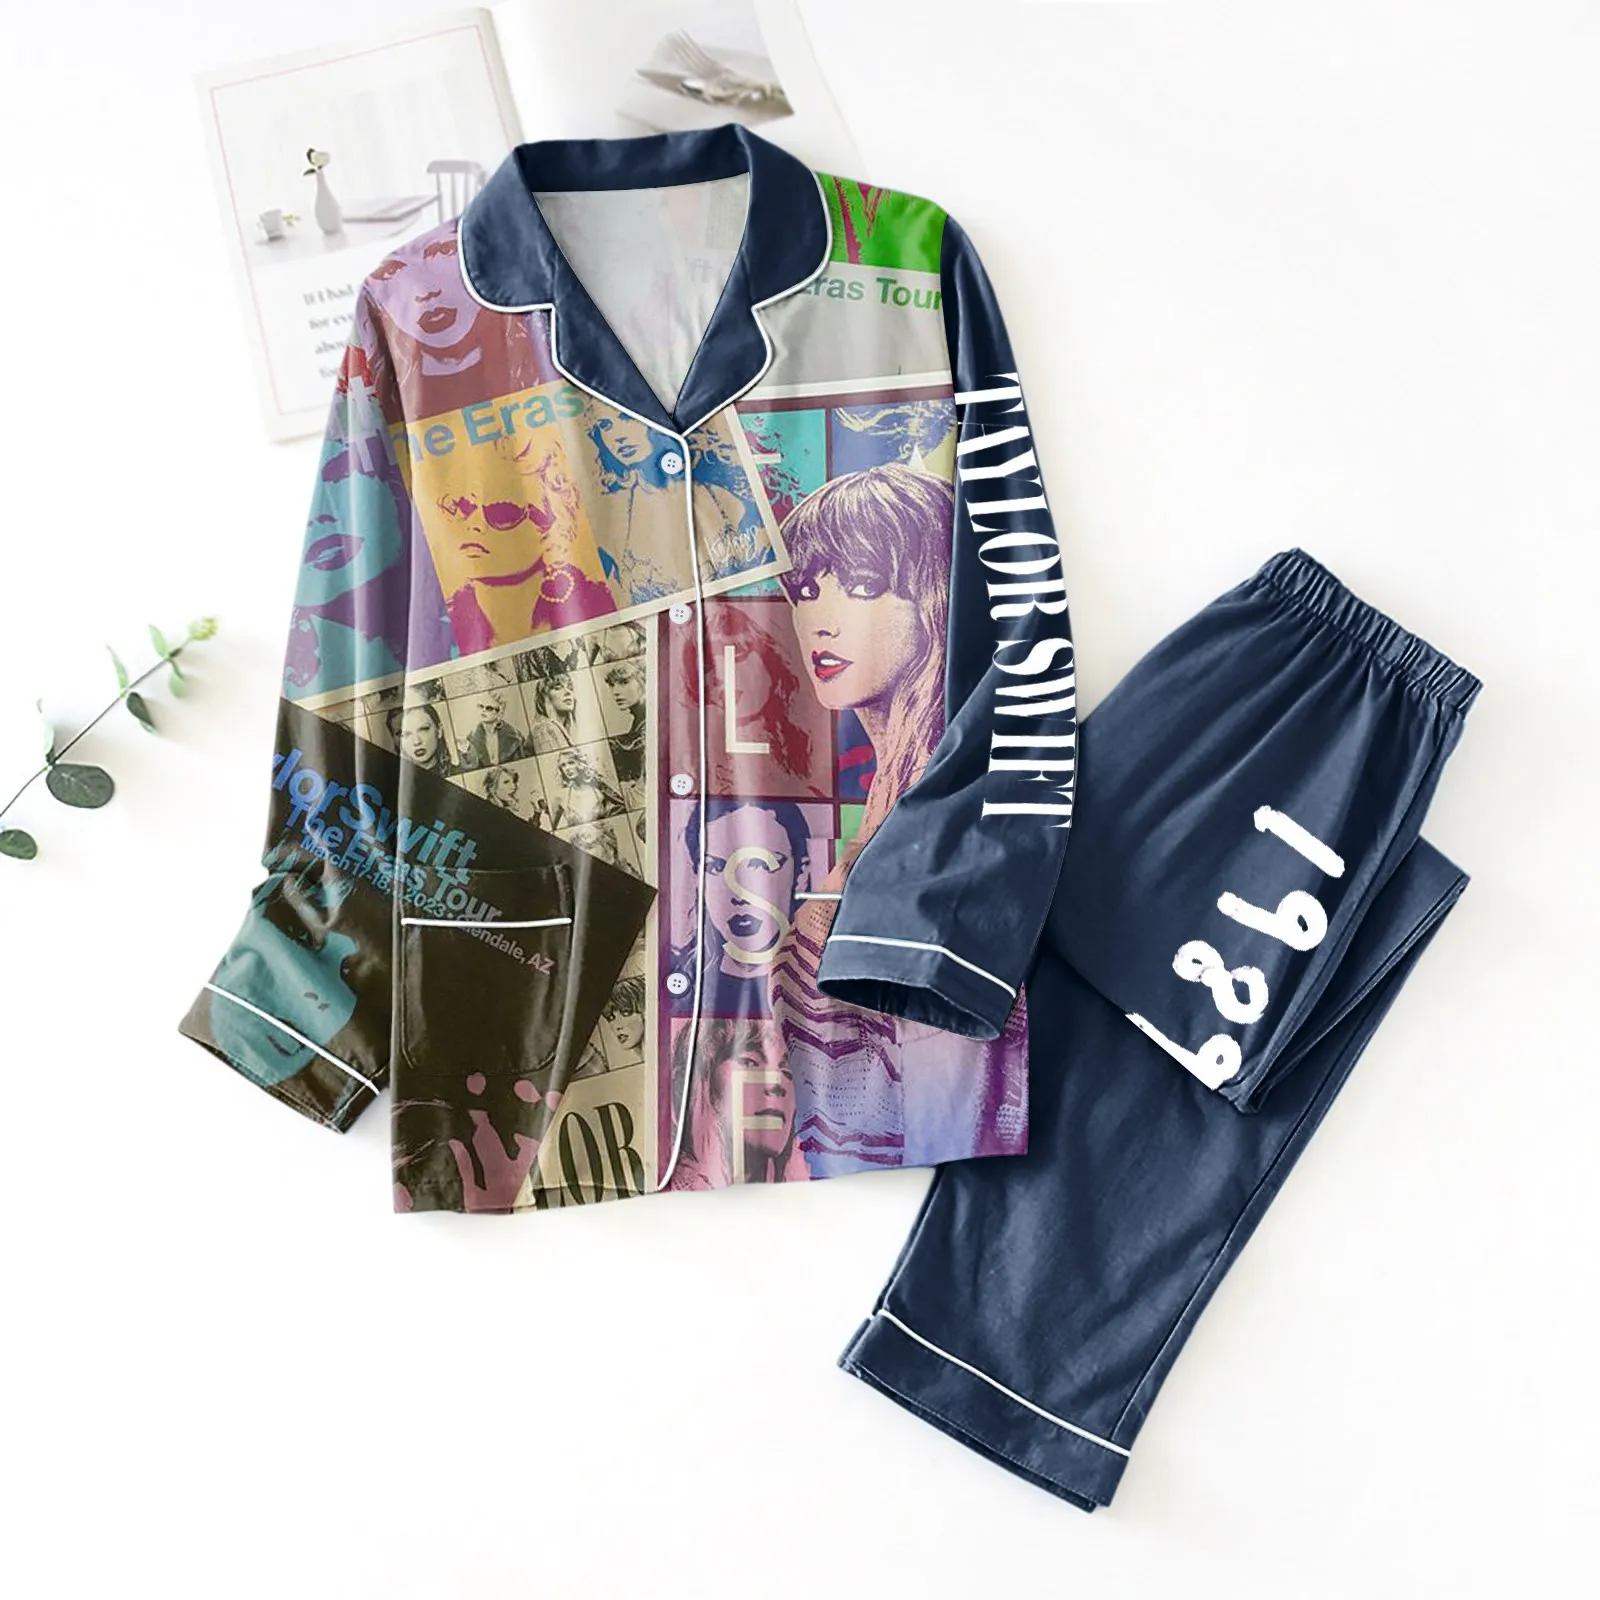 

Пижама Ts Dlx, комплект для сна, рубашки и брюки, штаны с длинным рукавом, пижамный комплект, футболка, домашняя одежда, домашняя пижама с быстрой печатью, 1989